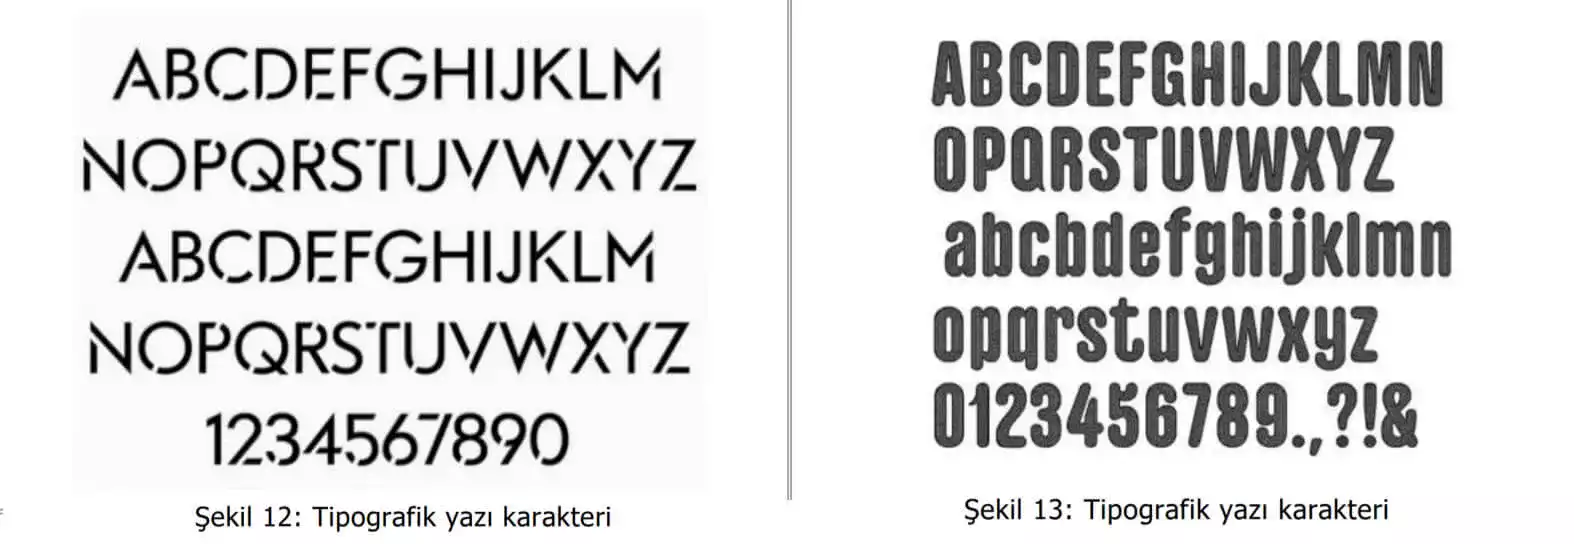 tipografik yazı karakter örnekleri-Gaziantep Web Tasarım